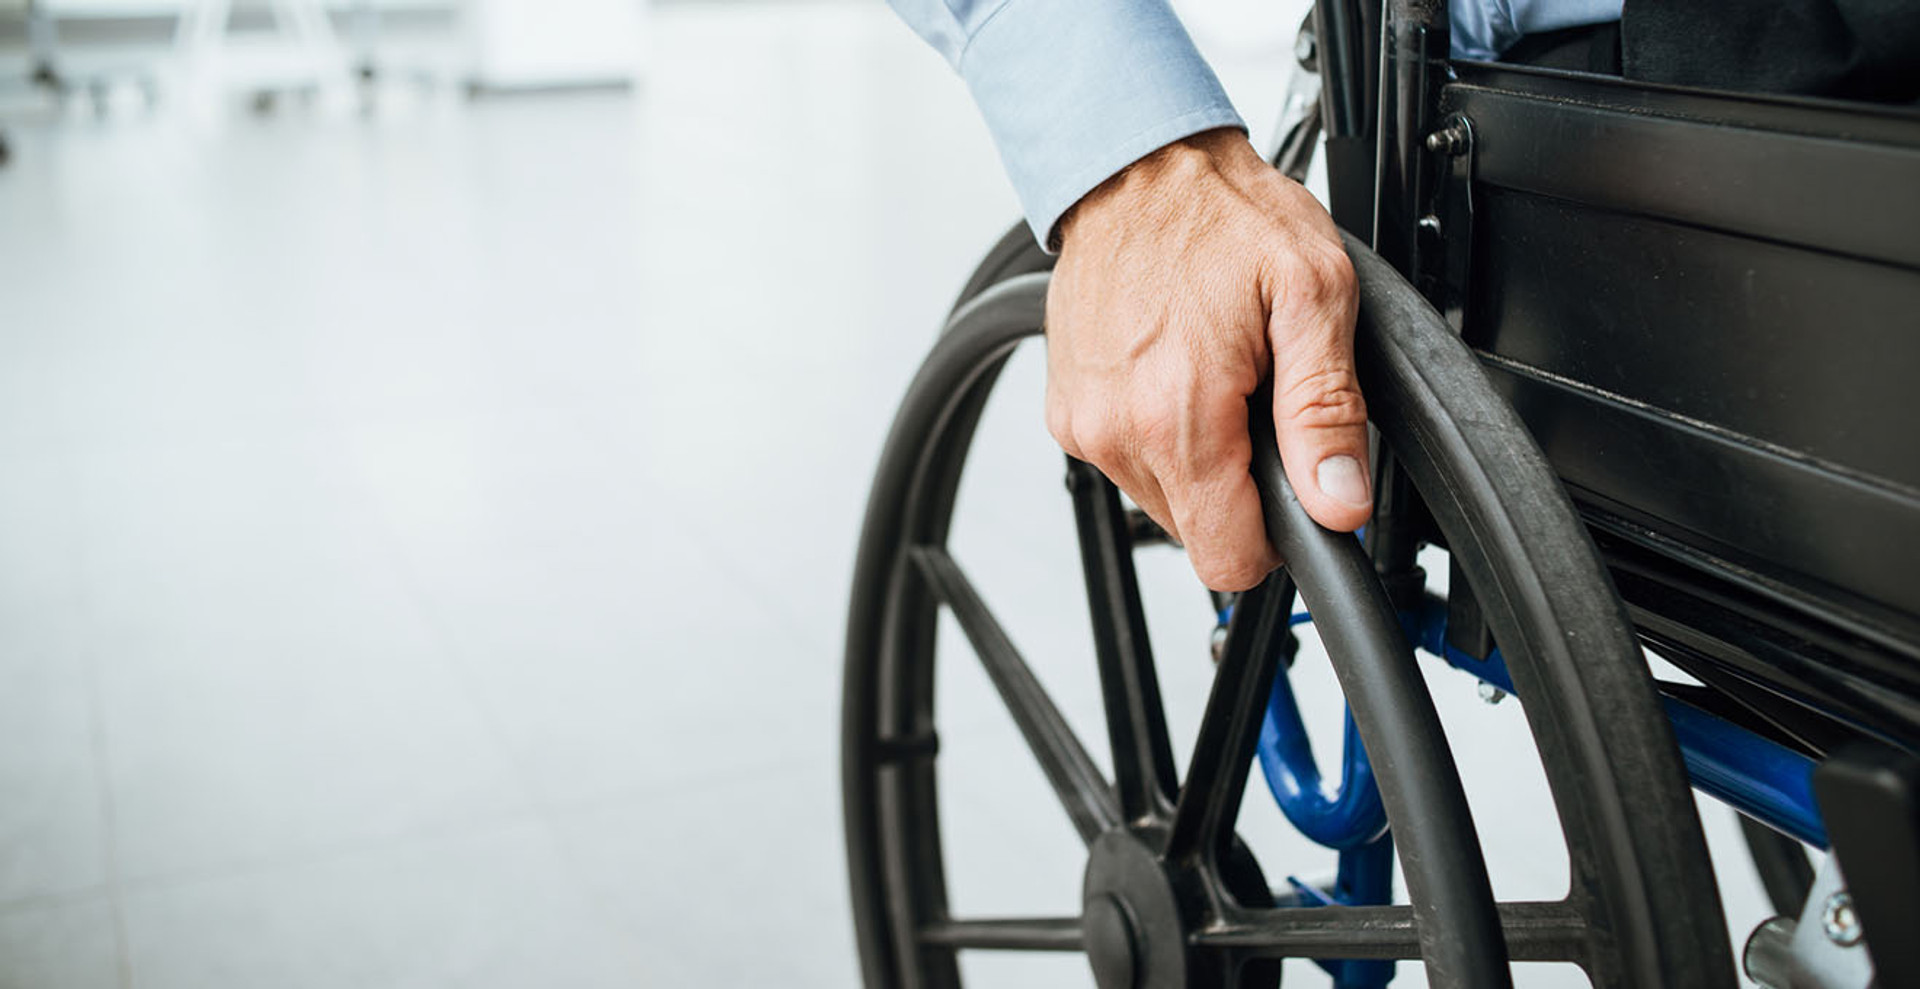 Працевлаштування людей з інвалідністю – місія неможлива